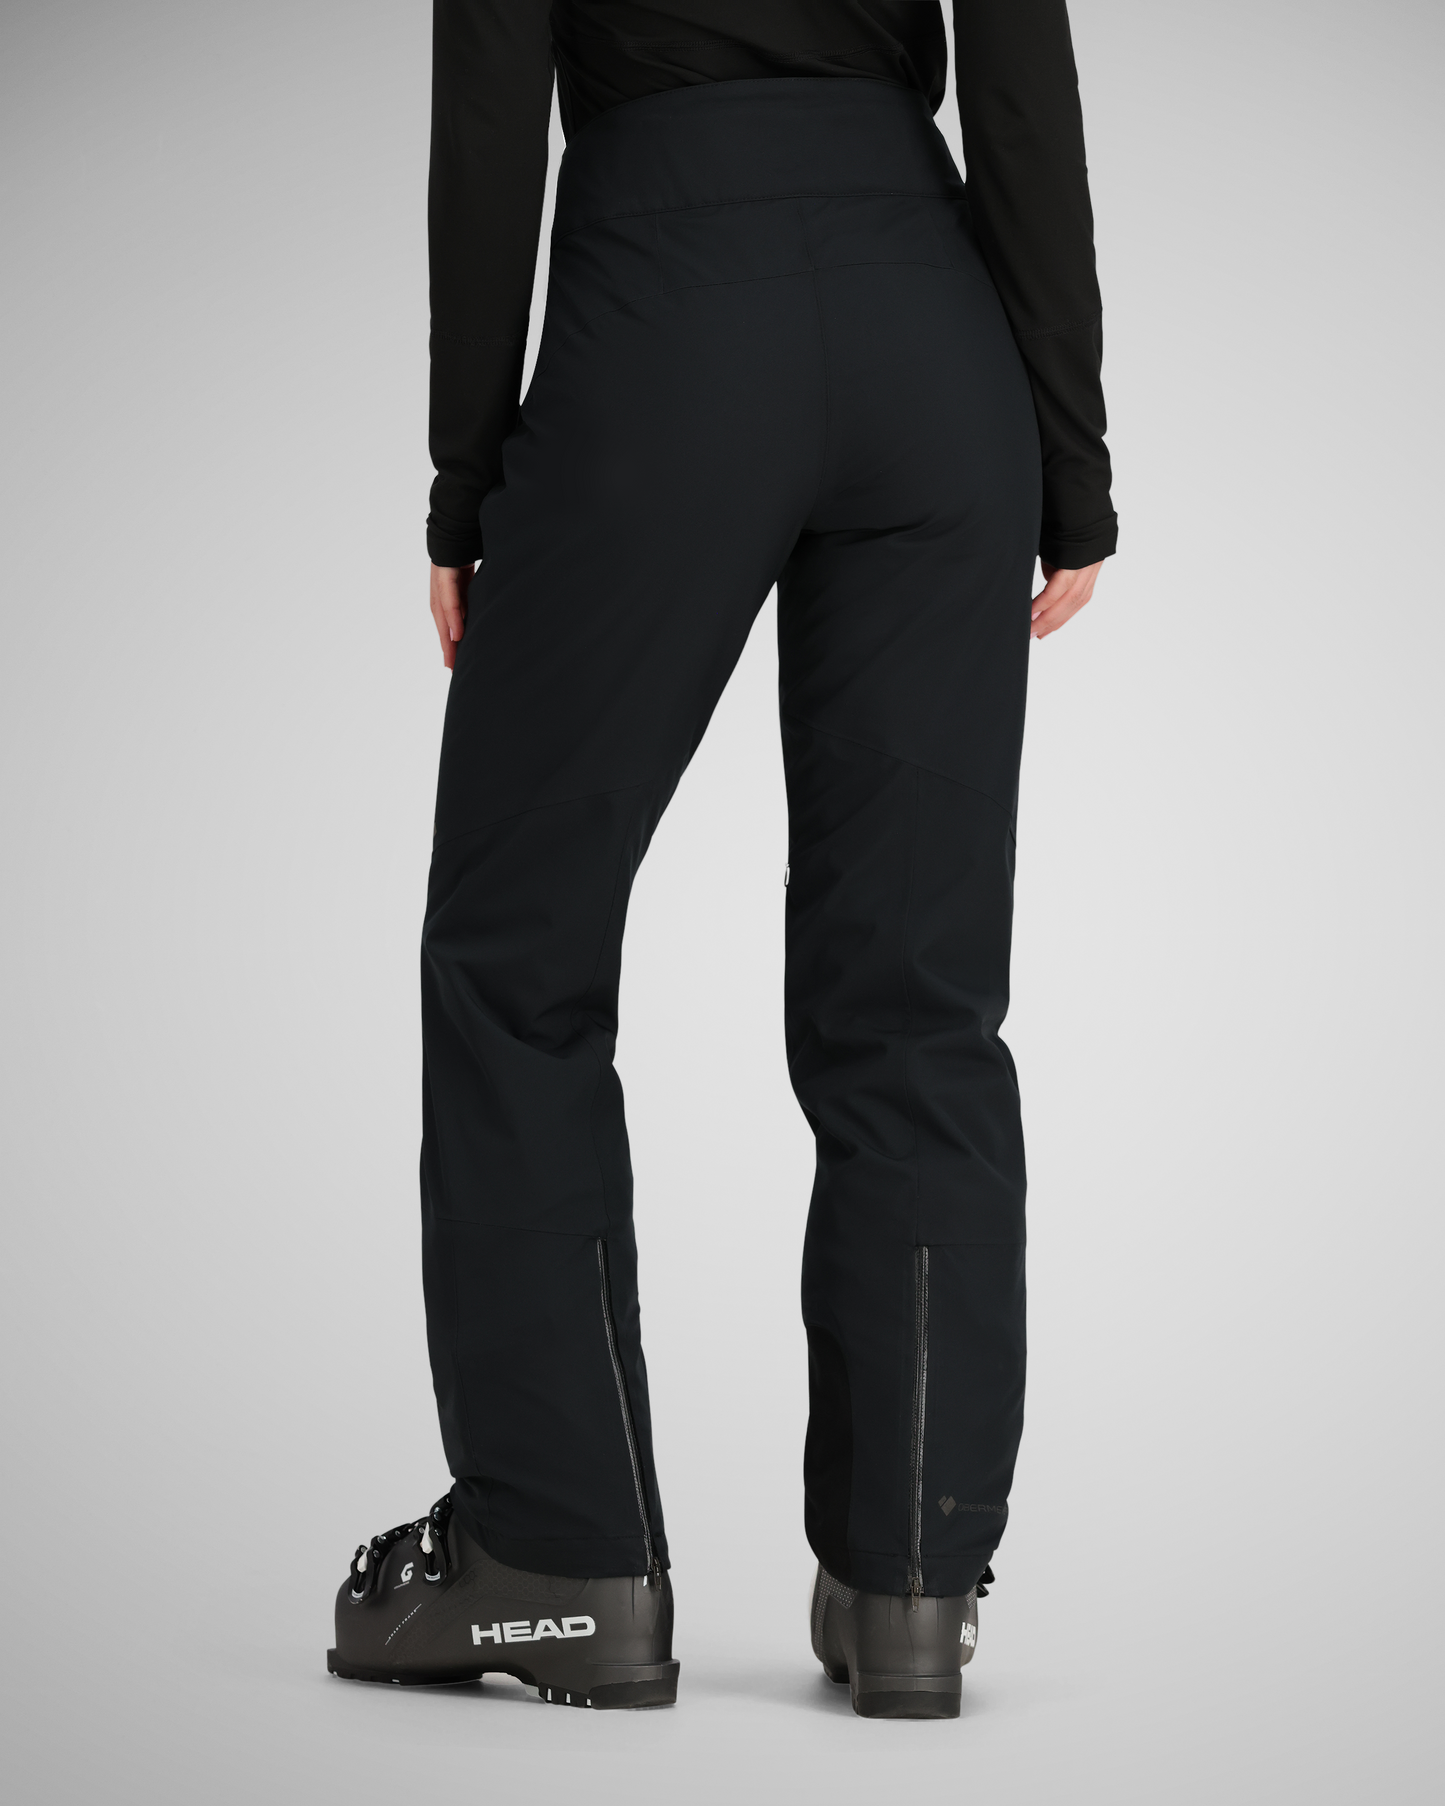 Castle X Bliss Women's Snow Pants, Black, Assorted Sizes